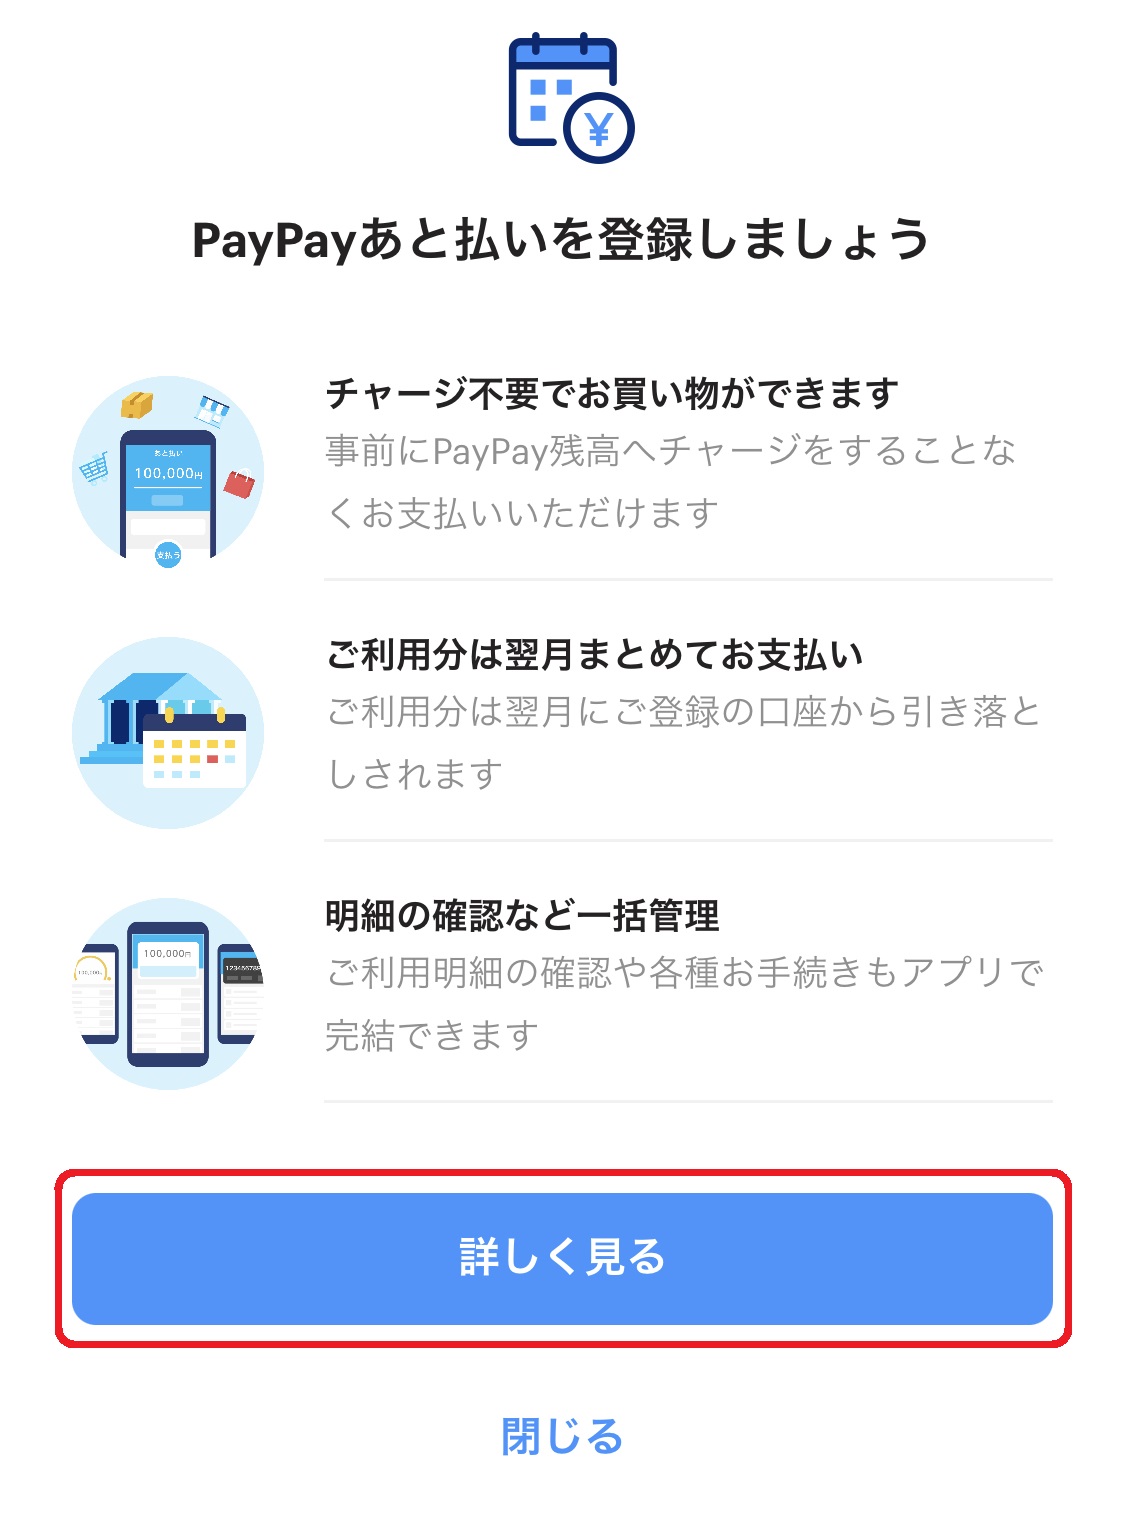 「PayPayあと払いを登録しましょう」と表示されたら、「詳しく見る」をタップしてください。